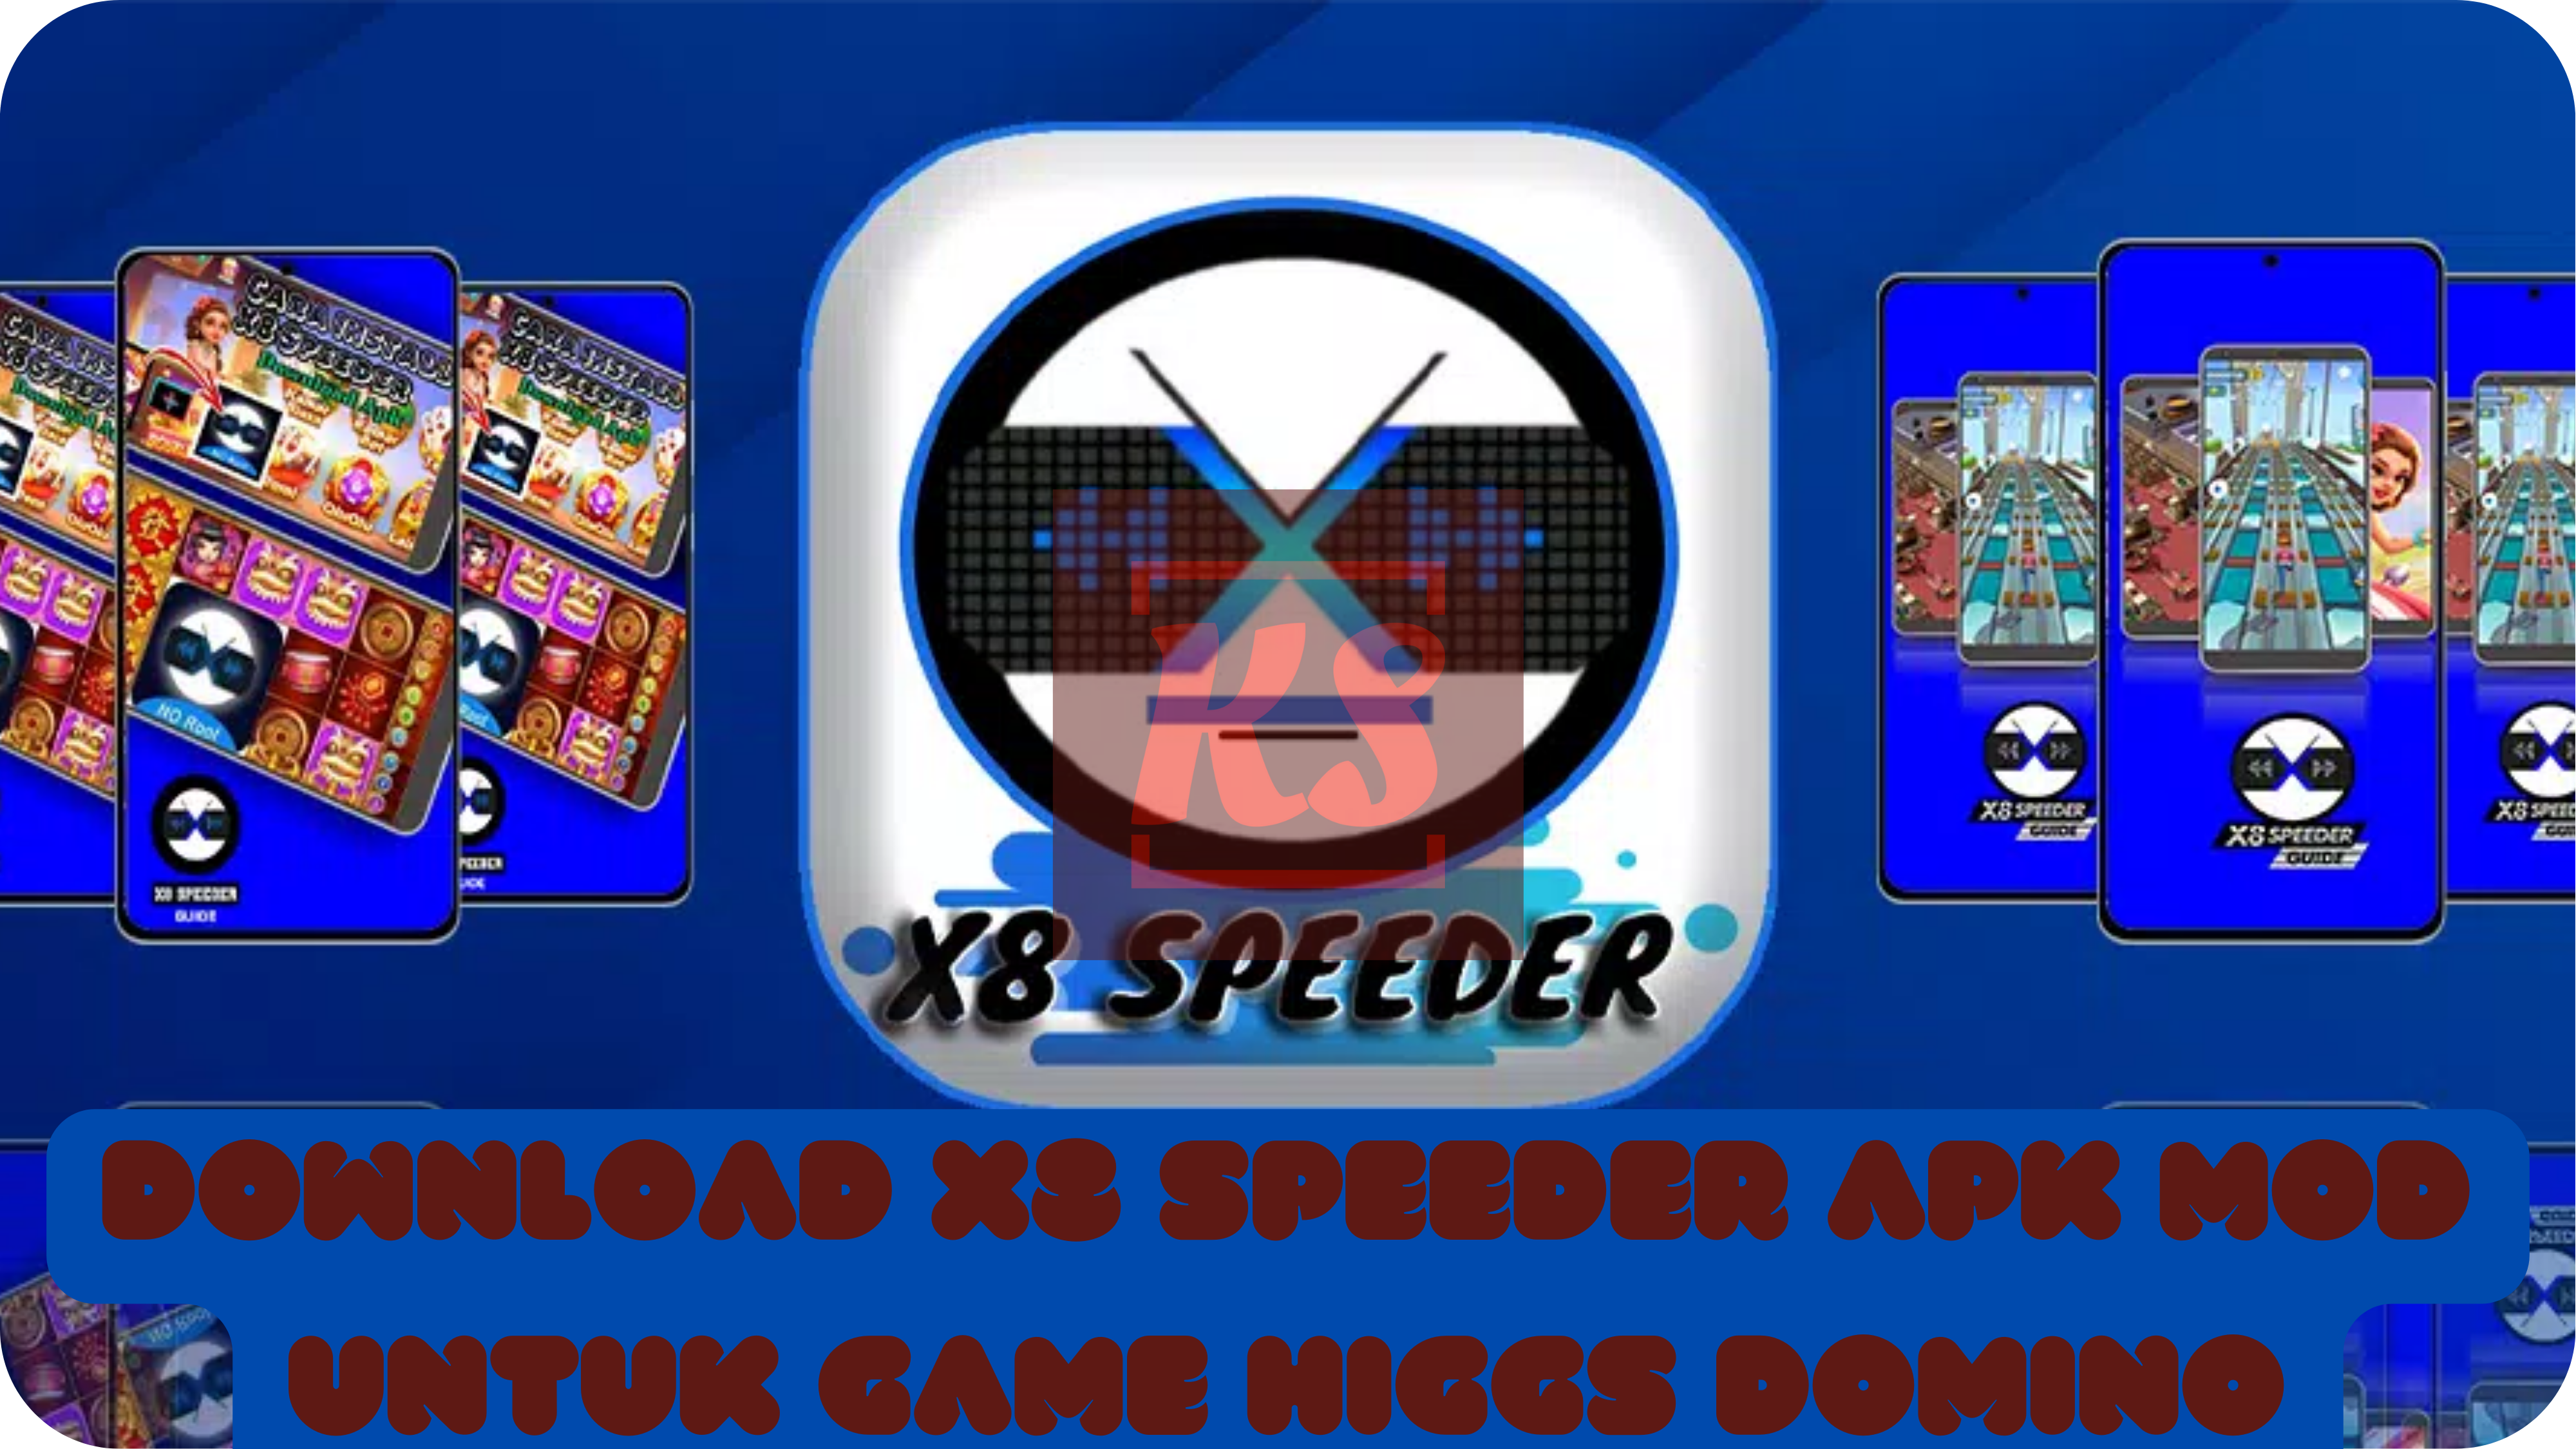 Download X8 Speeder Apk Mod Untuk Game Higgs Domino